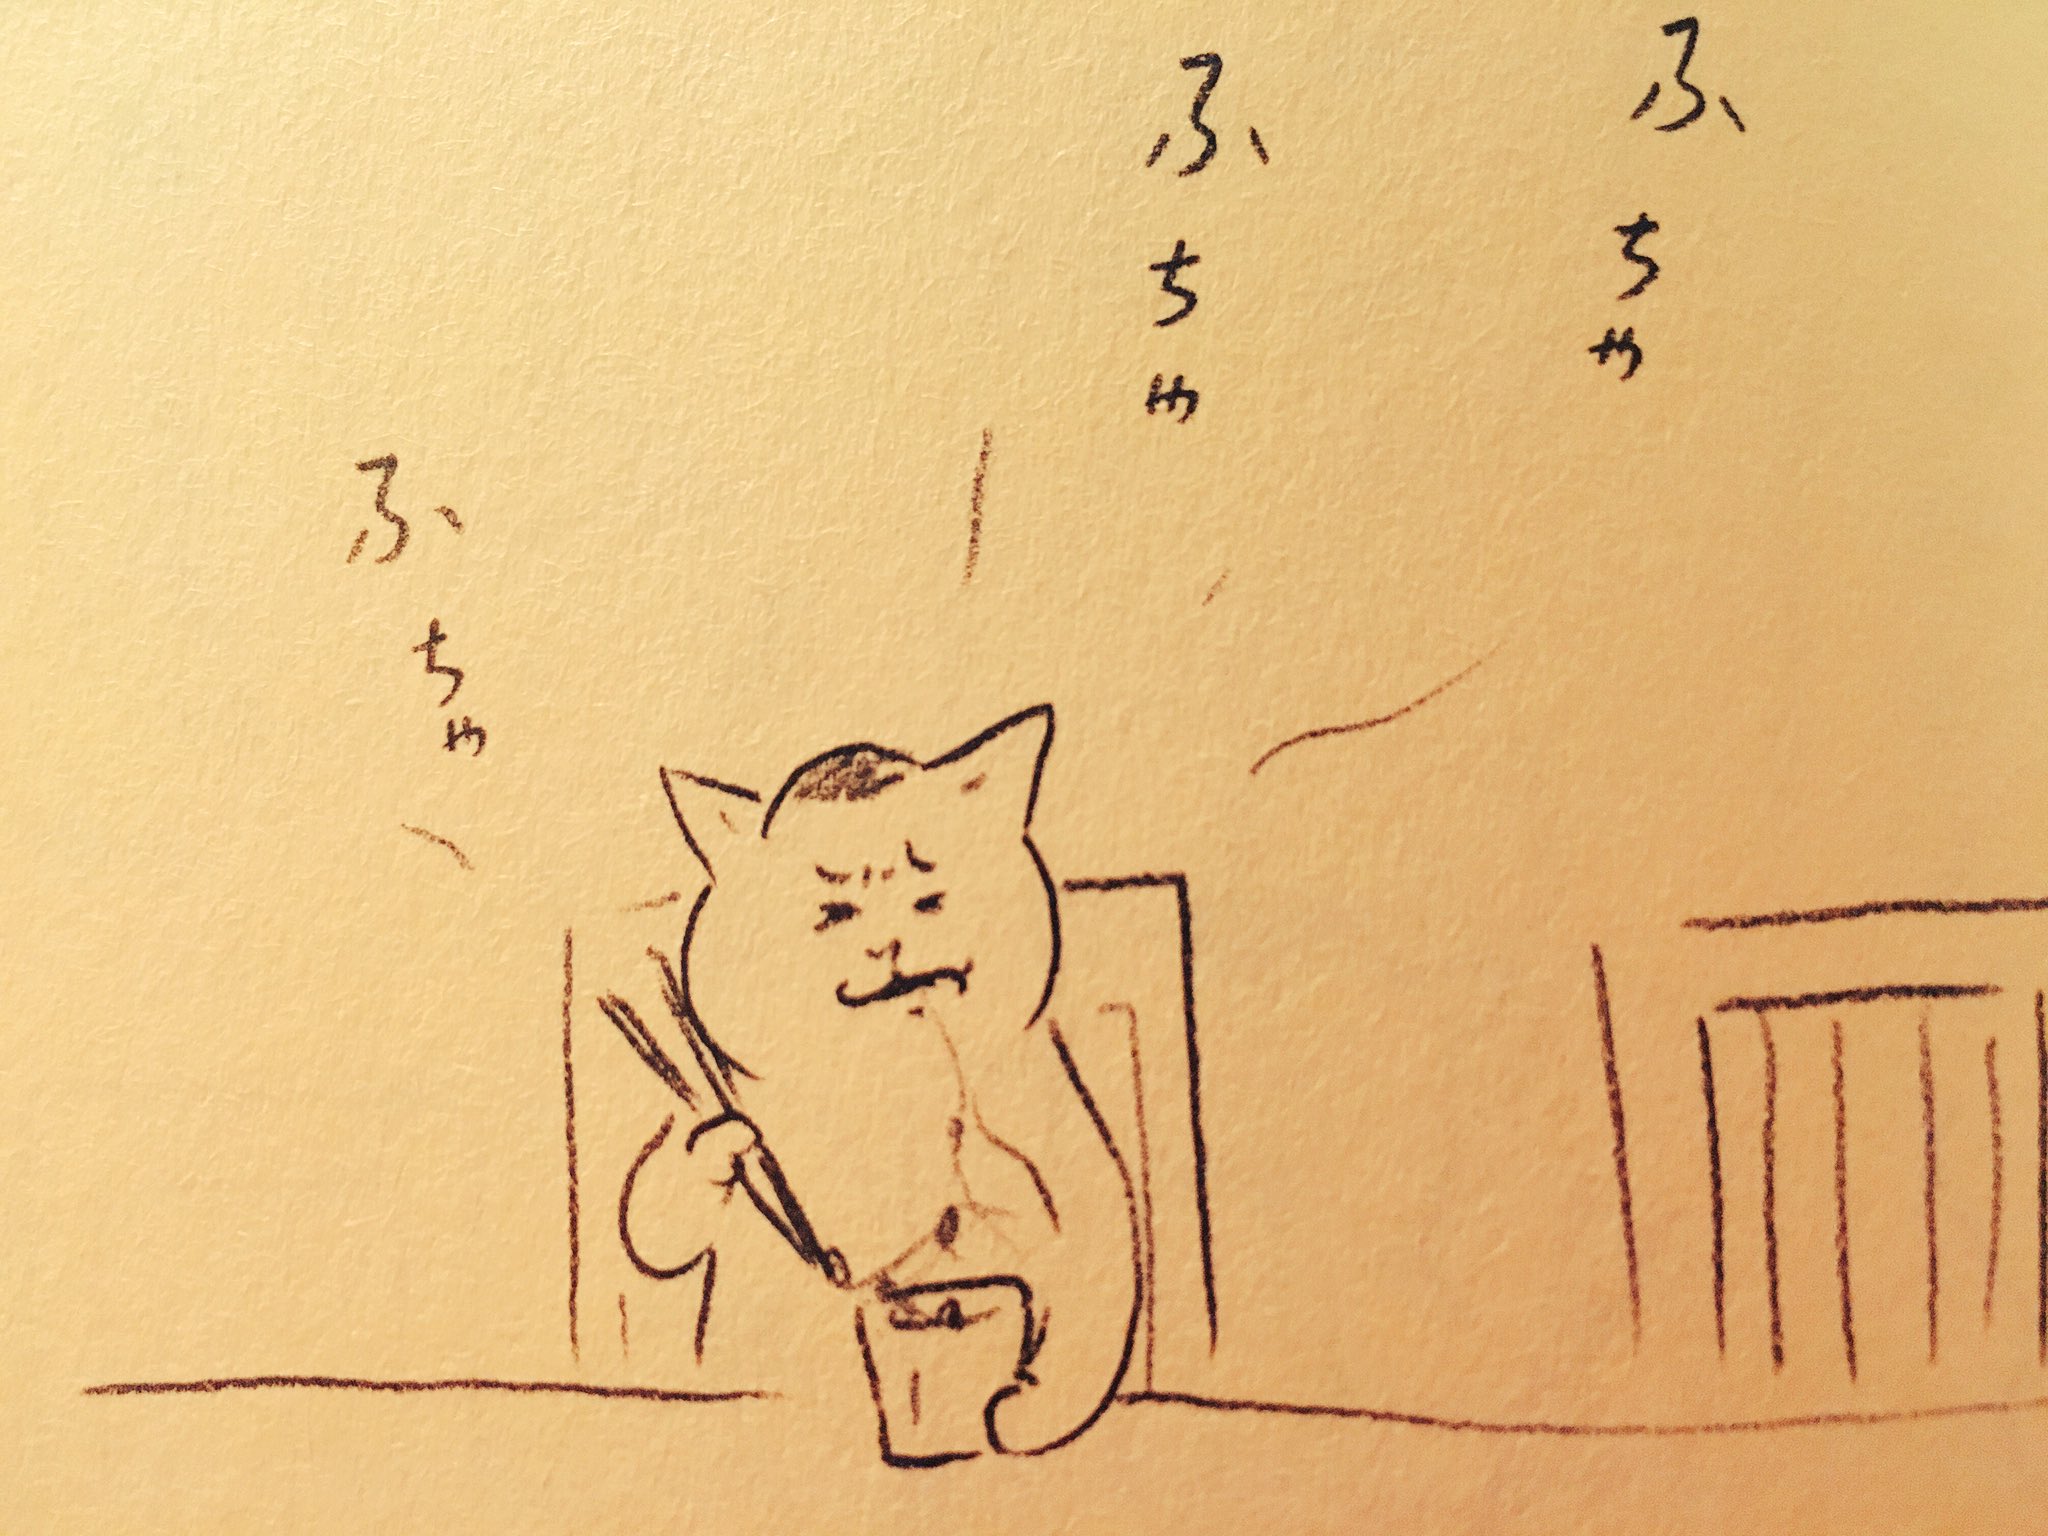 コトリンゴ Kotringo Chigasakimanabu はーい 納豆を食べる猫村さん T Co 9qmbyatt7o Twitter